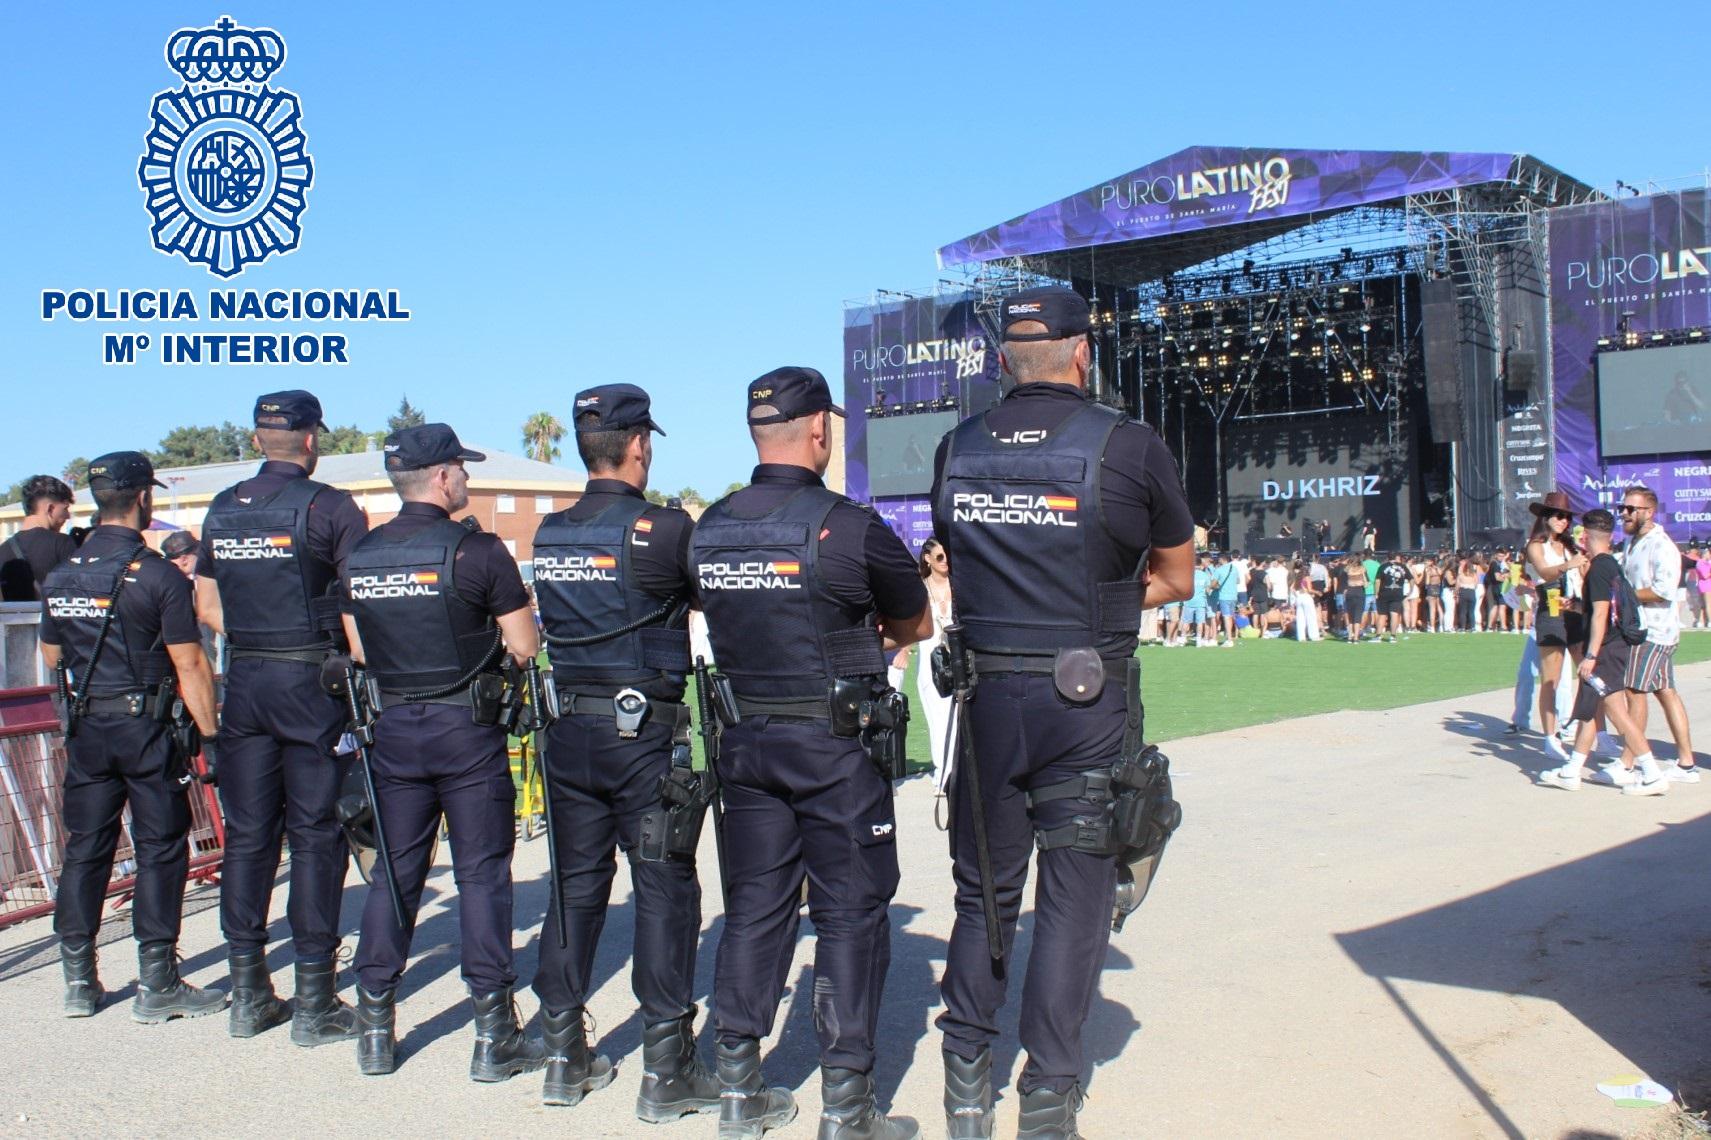 Fuerte dispositivo de seguridad con más de 200 agentes por el Puro Latino Fest 2023 en El Puerto